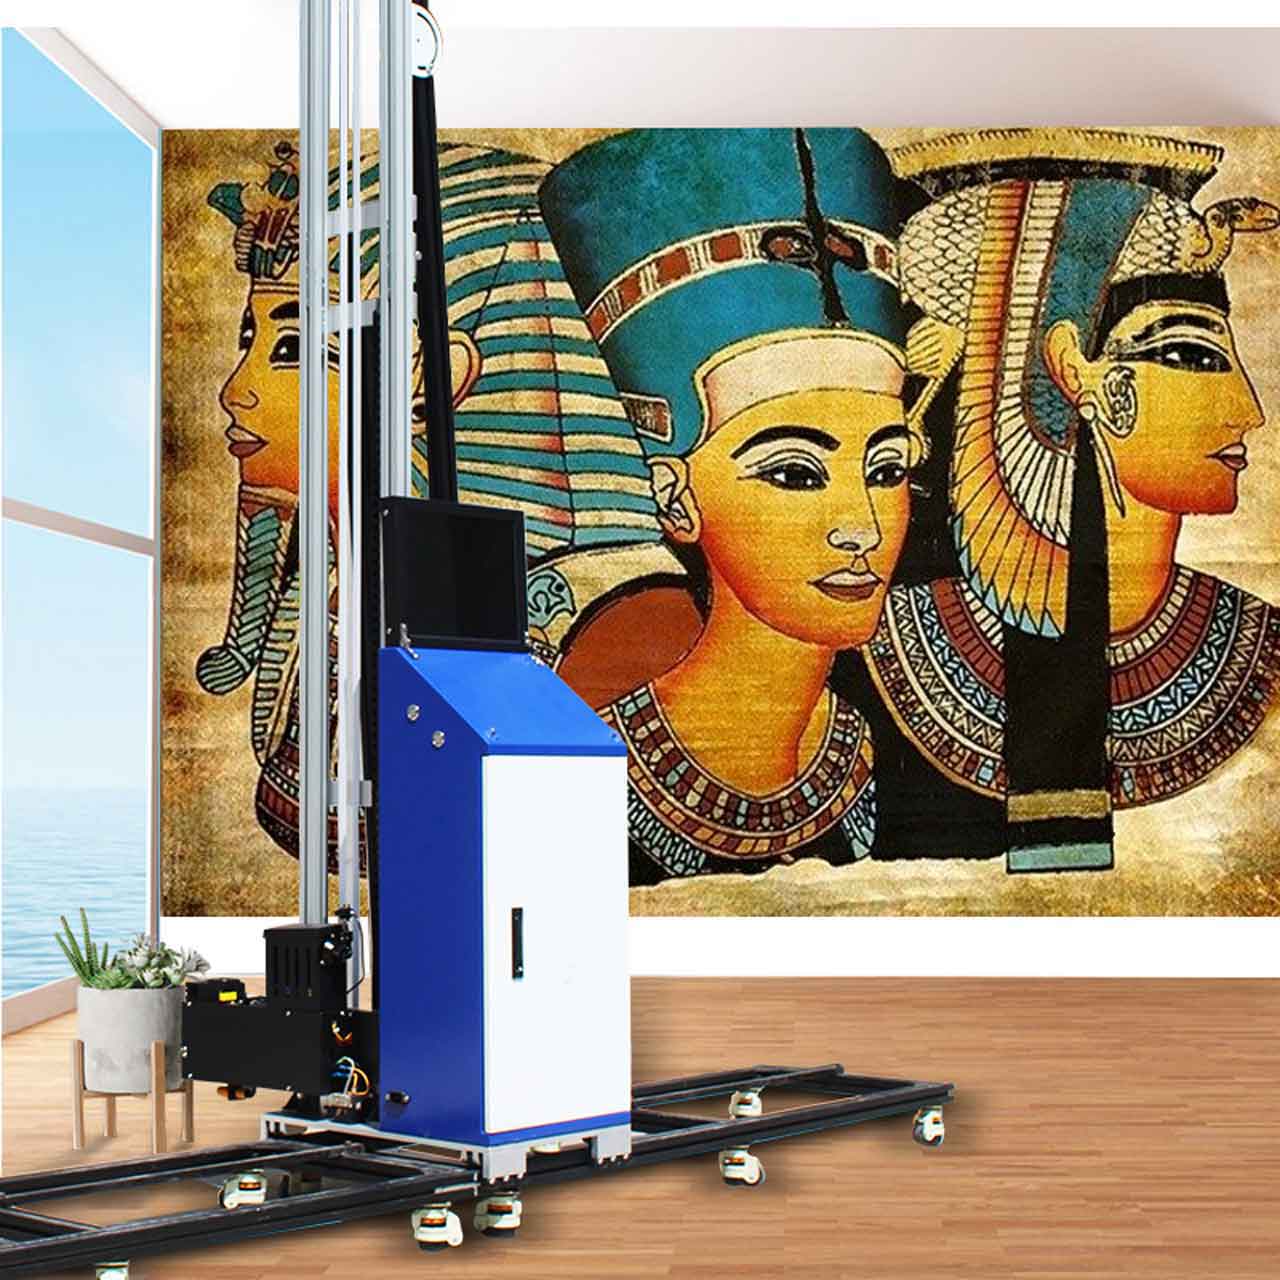 Kunstmalerei-UV-Wanddruckmaschine